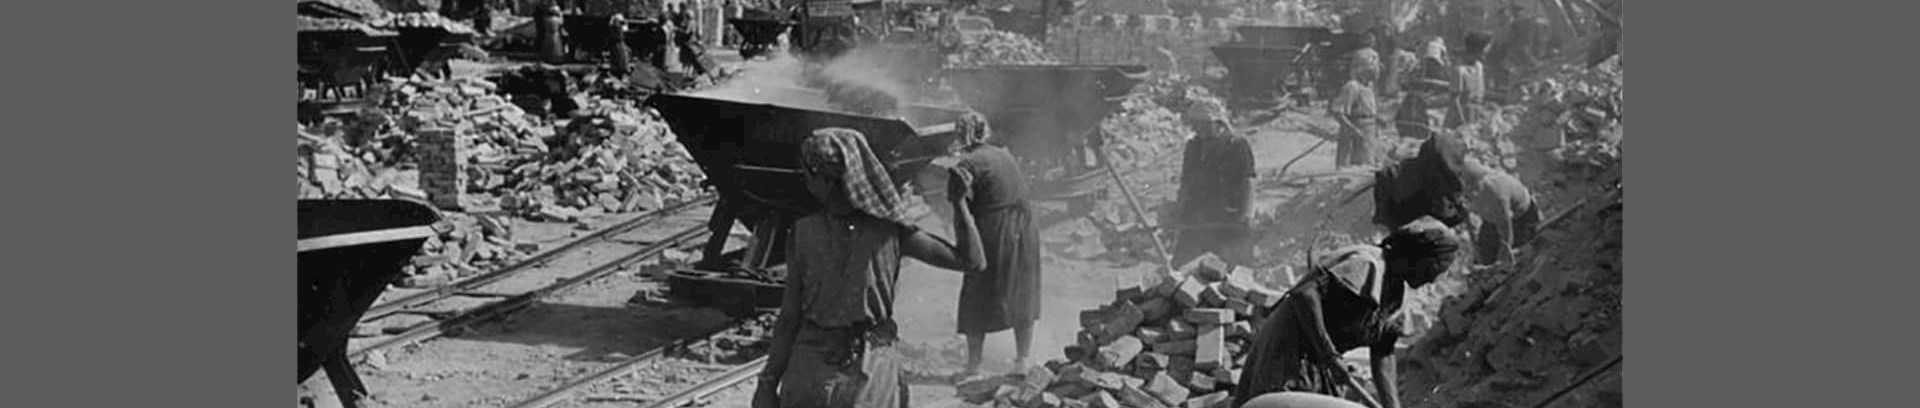 Trümmerberge - ruindyngerne efter den 2. verdenskrig. Foto Kolbe 1947